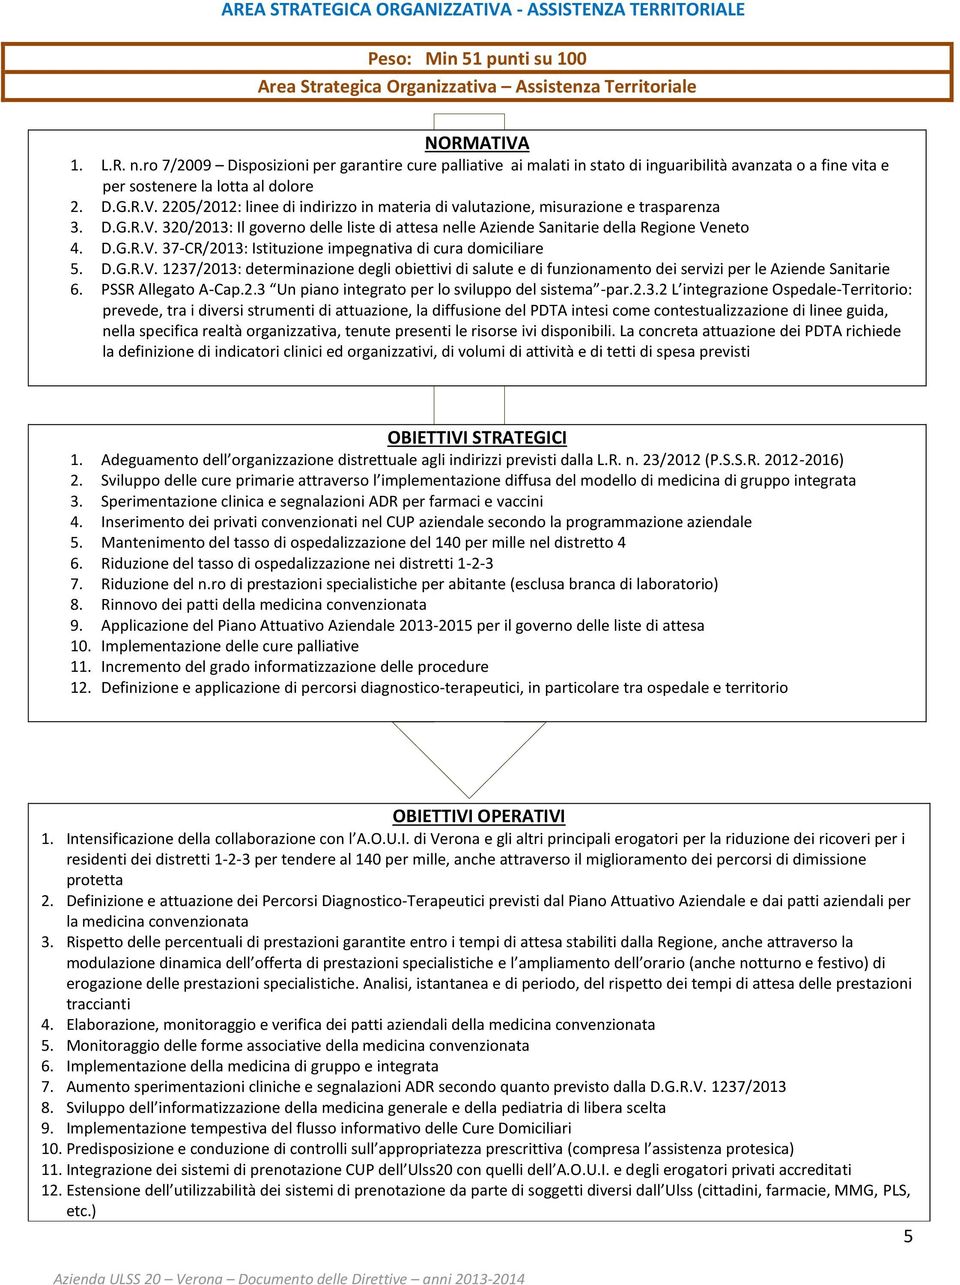 2205/2012: linee di indirizzo in materia di valutazione, misurazione e trasparenza 3. D.G.R.V. 320/2013: Il governo delle liste di attesa nelle Aziende Sanitarie della Regione Veneto 4. D.G.R.V. 37-CR/2013: Istituzione impegnativa di cura domiciliare 5.